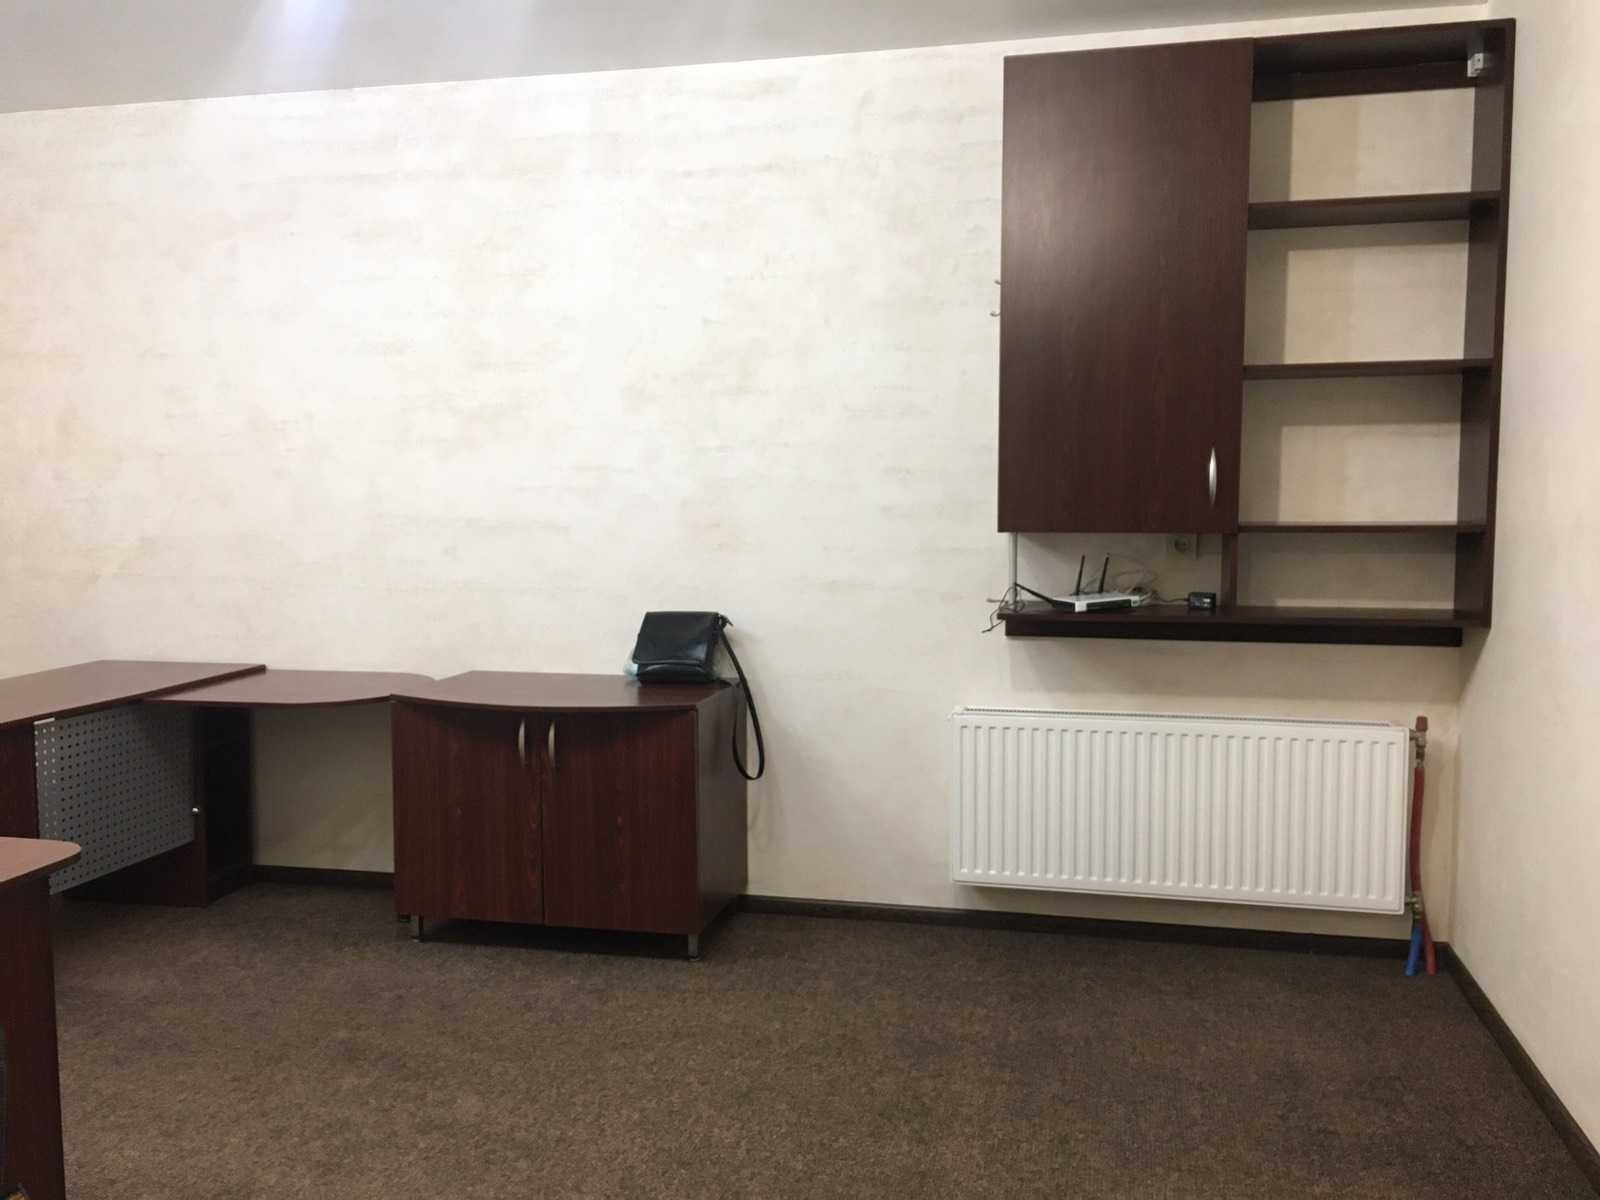 Меблированный офис в закрытом дворе нового дома. р-н парка Победы